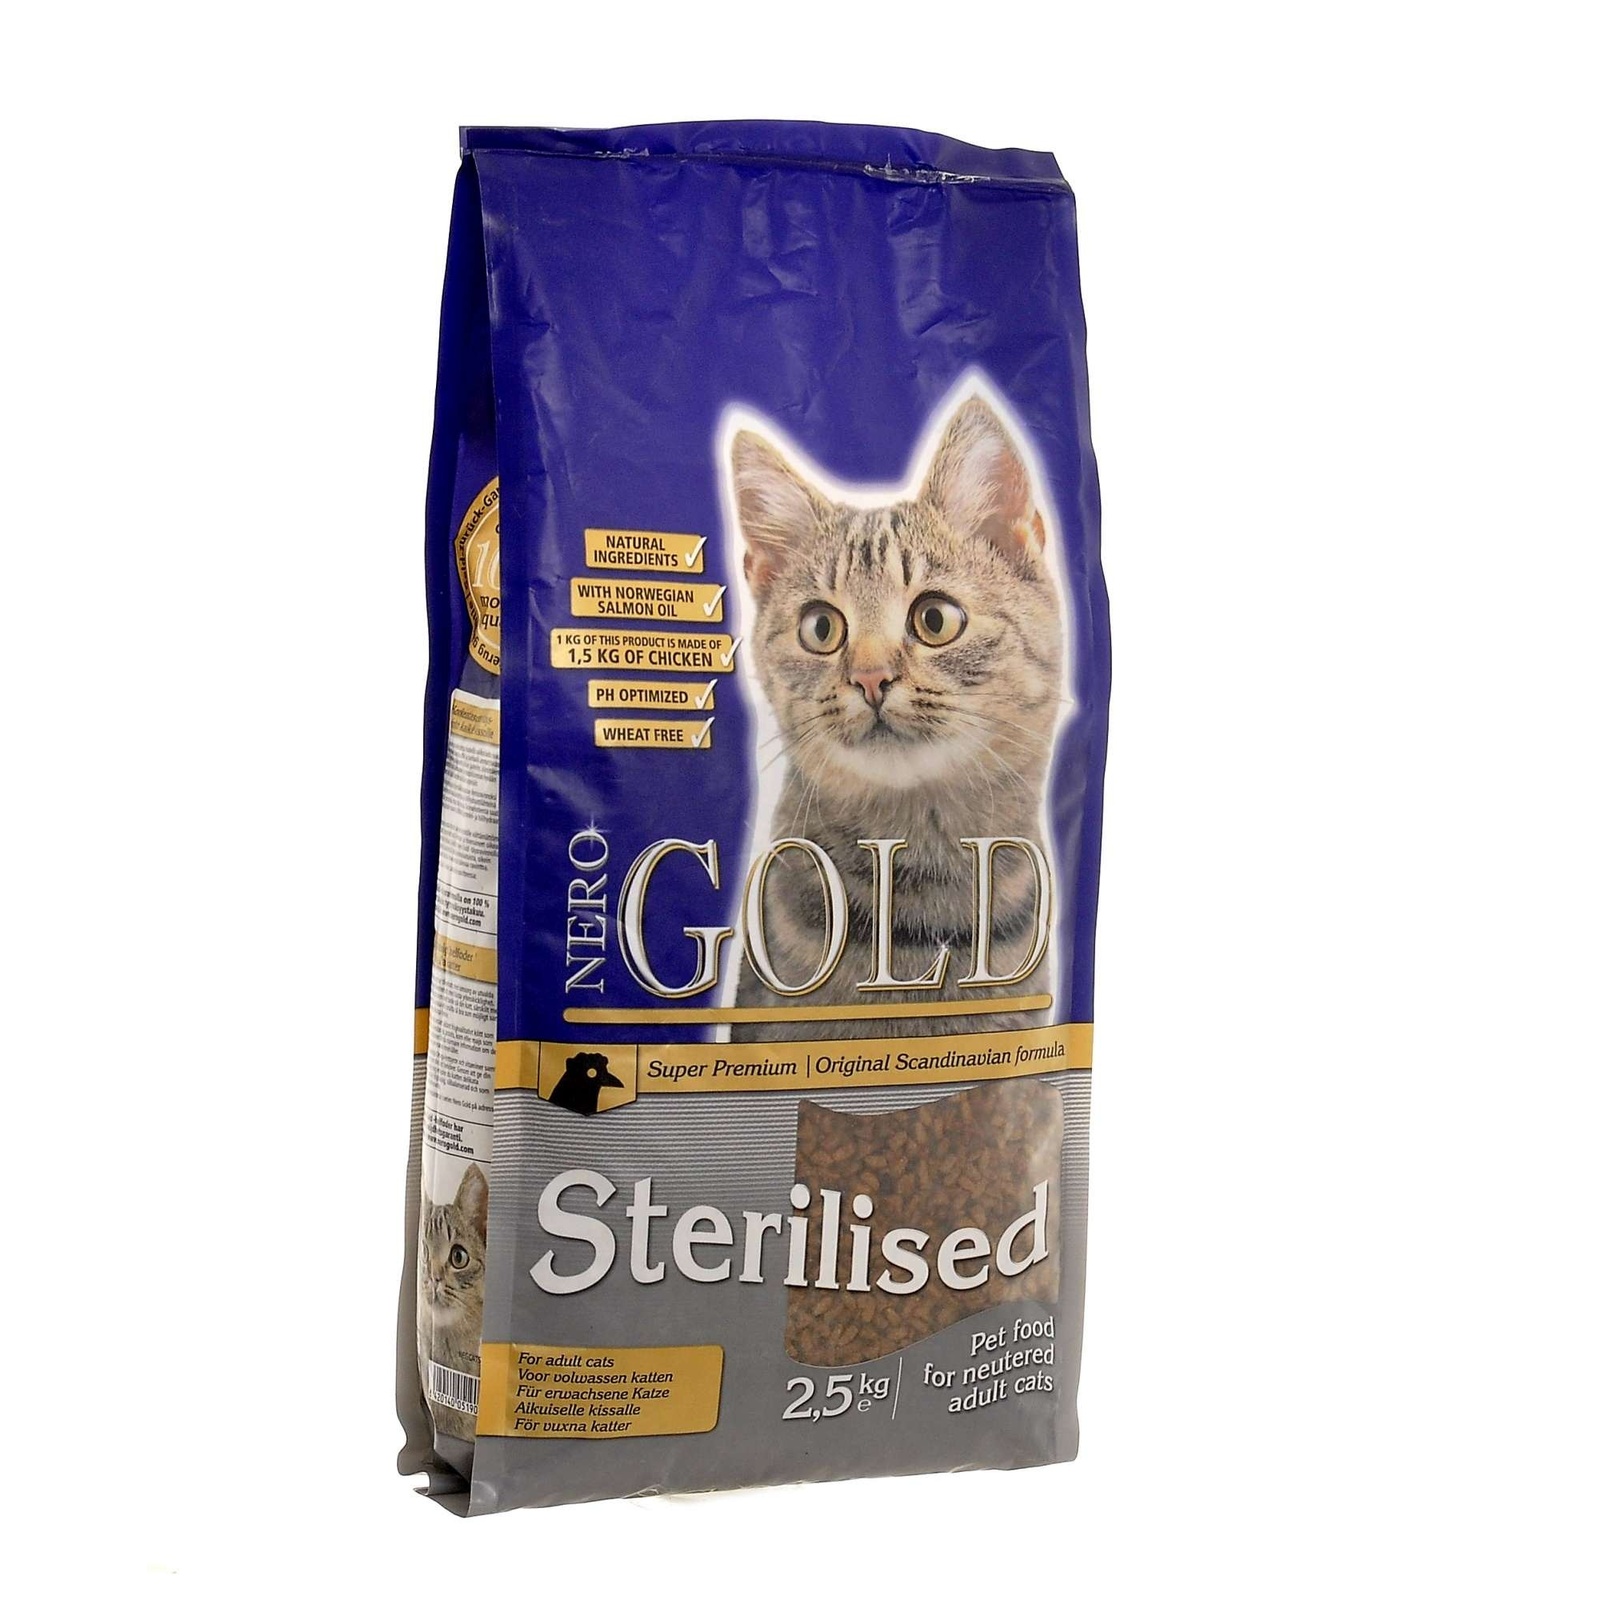 Для профилактики мочекаменной болезни у стерилизованных кошек (2,5 кг) NERO GOLD super premium Для профилактики мочекаменной болезни у стерилизованных кошек (2,5 кг) - фото 1